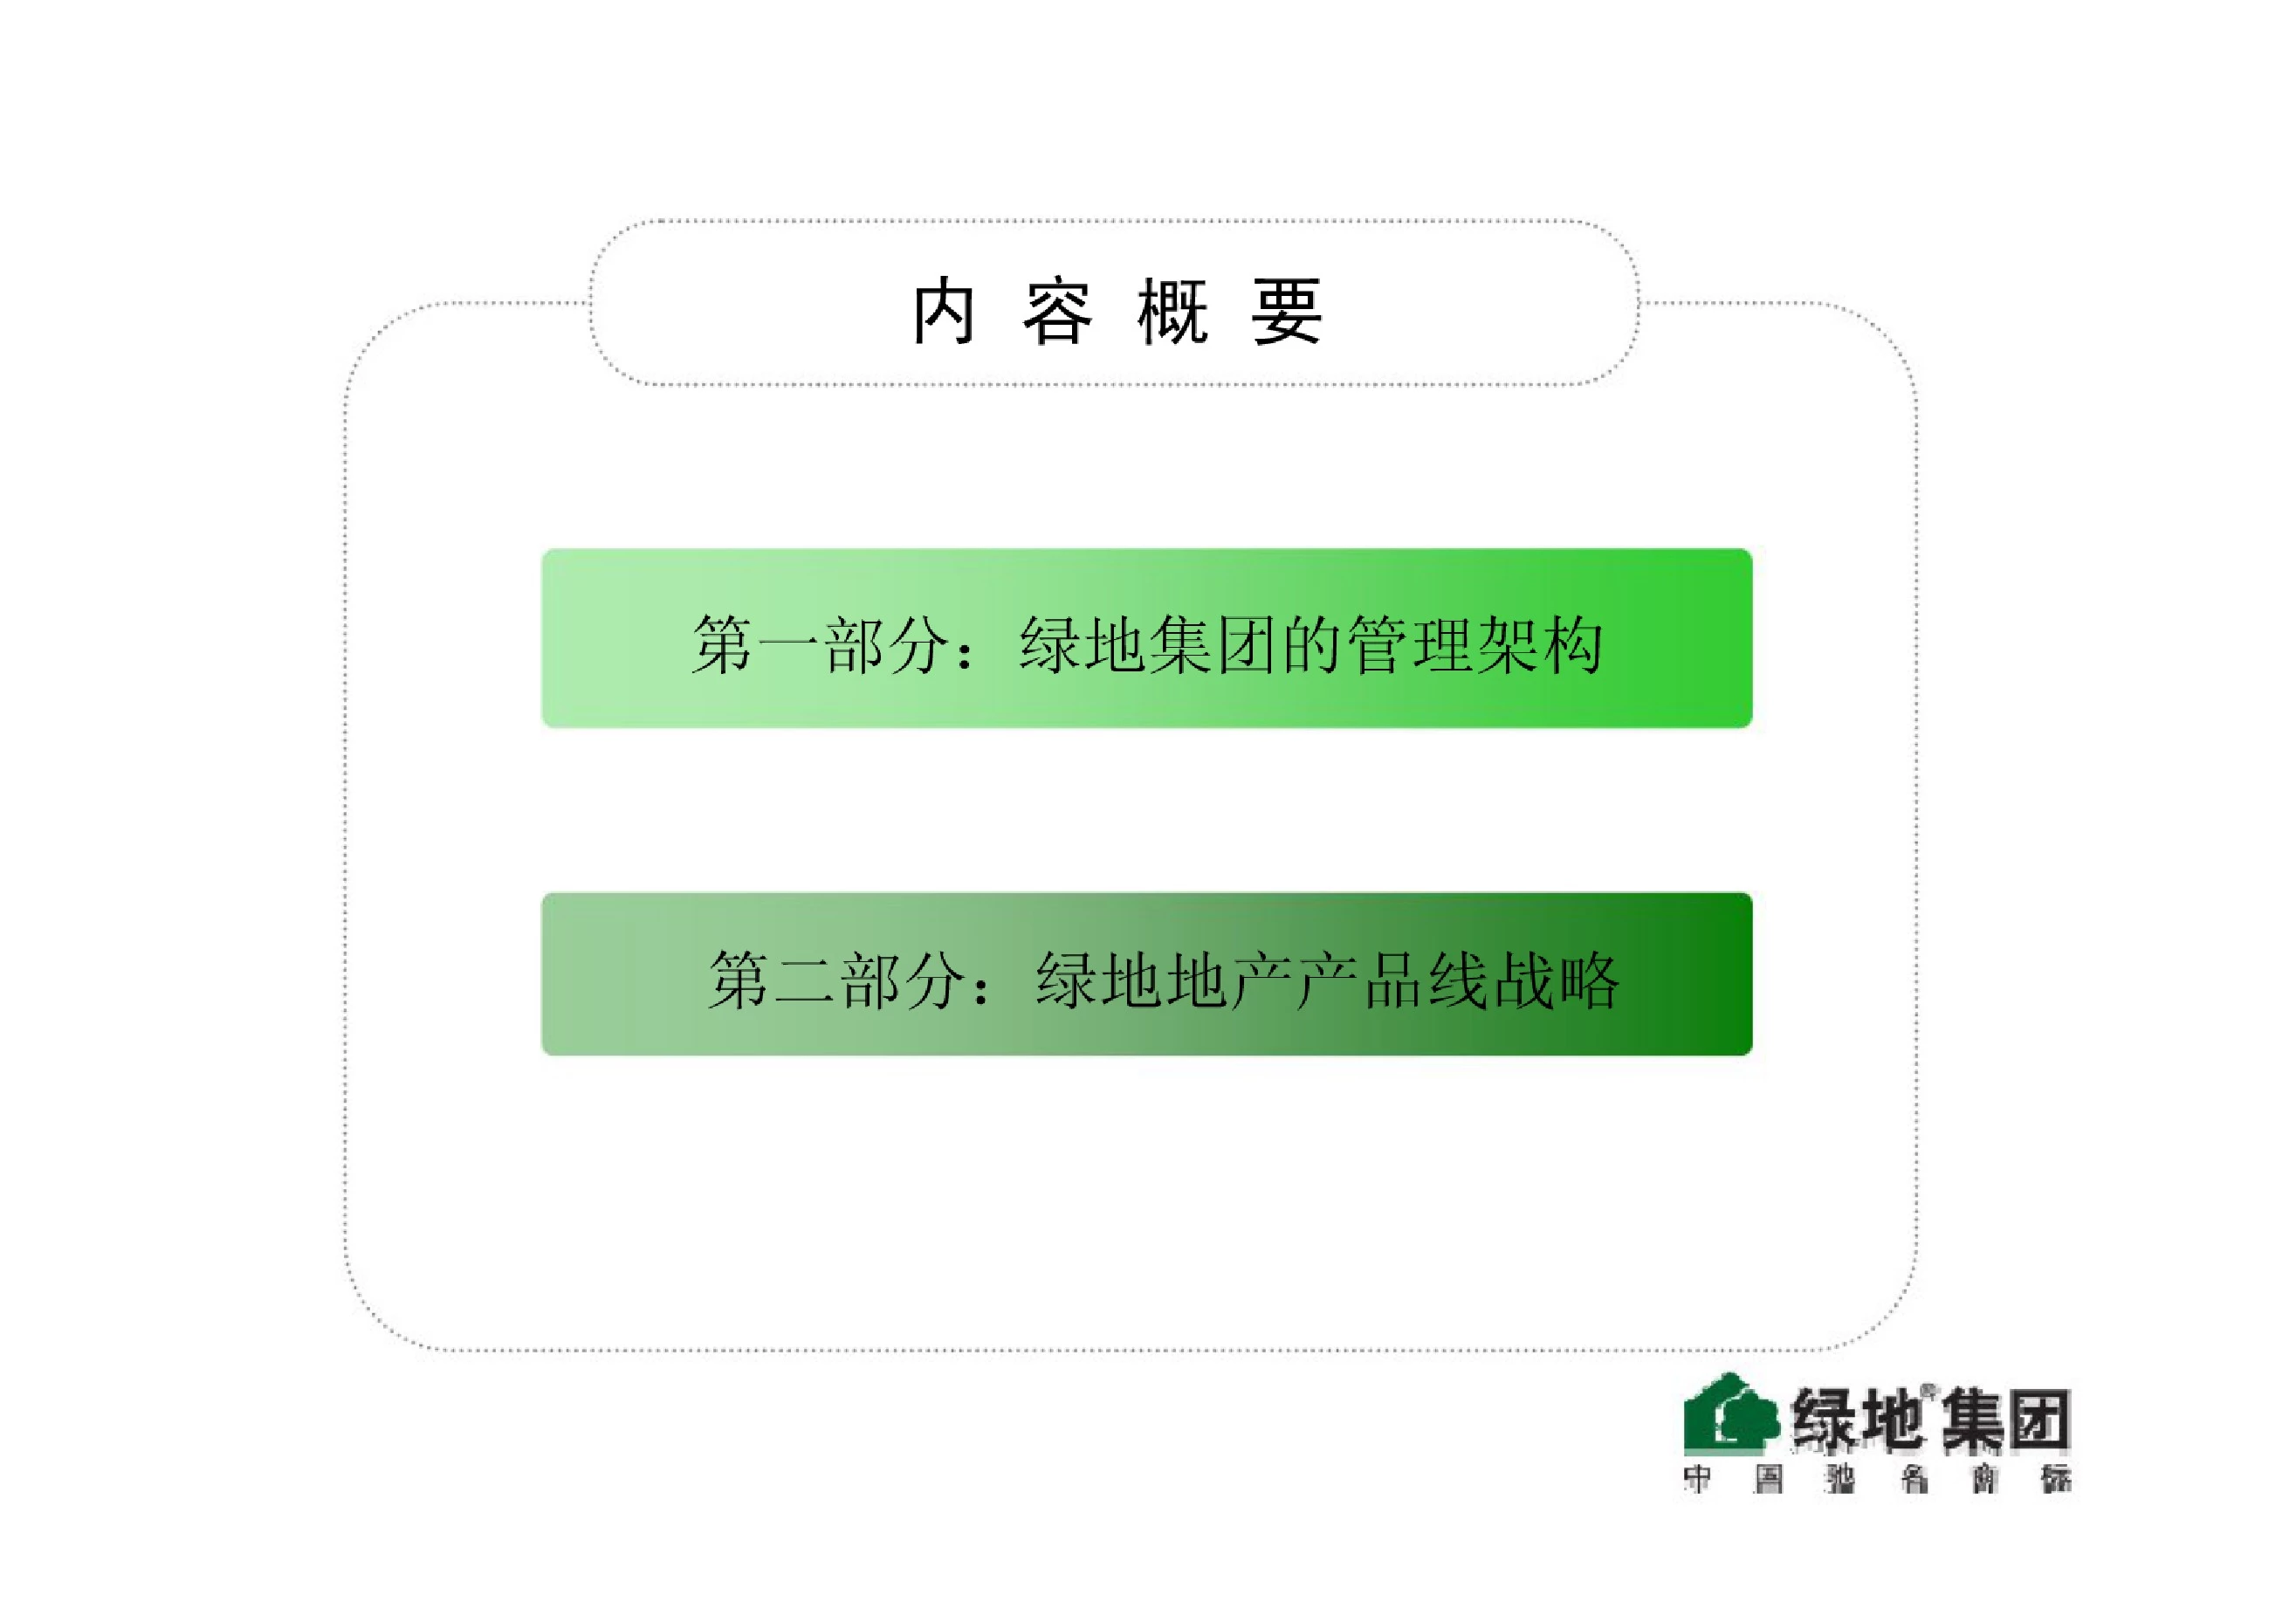 上海绿地集团地产业务管理模式介绍